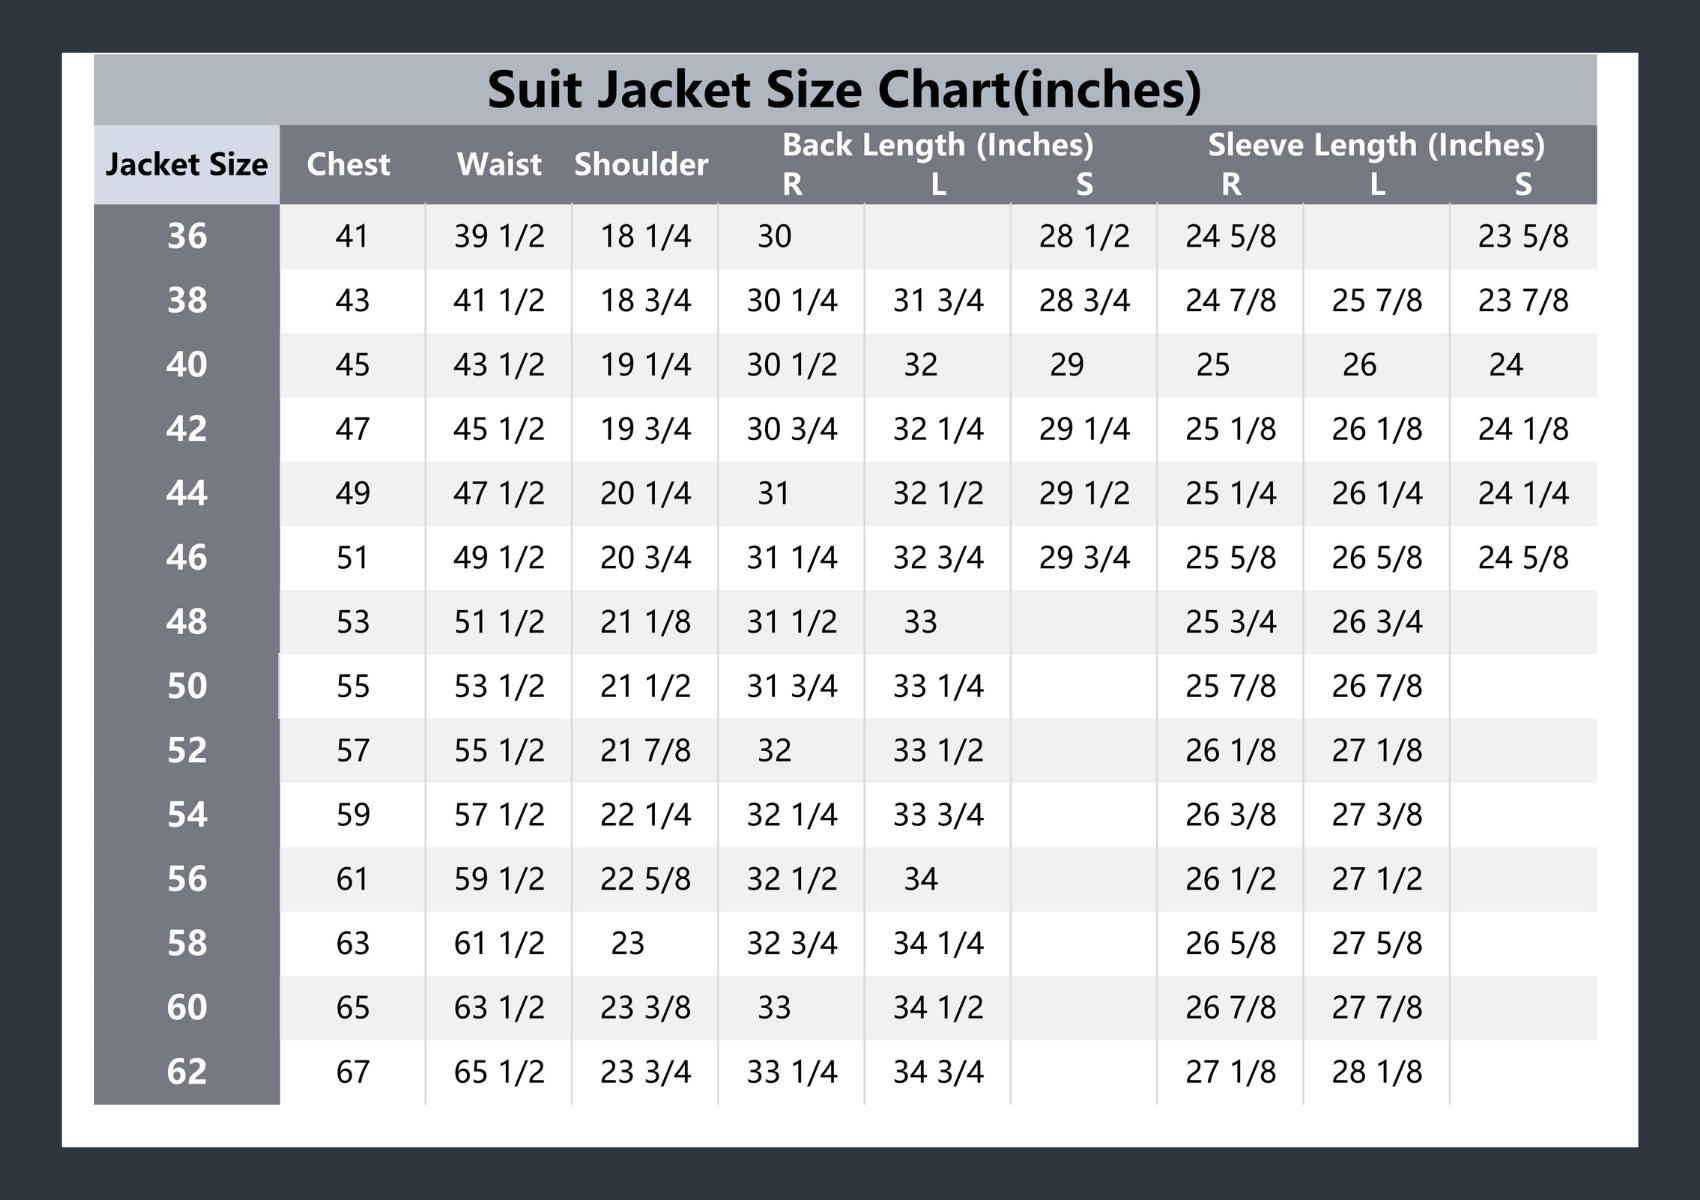 Men's Casual 2 Button Suit Blazer Classic Fit Wool Blend Sport Coat